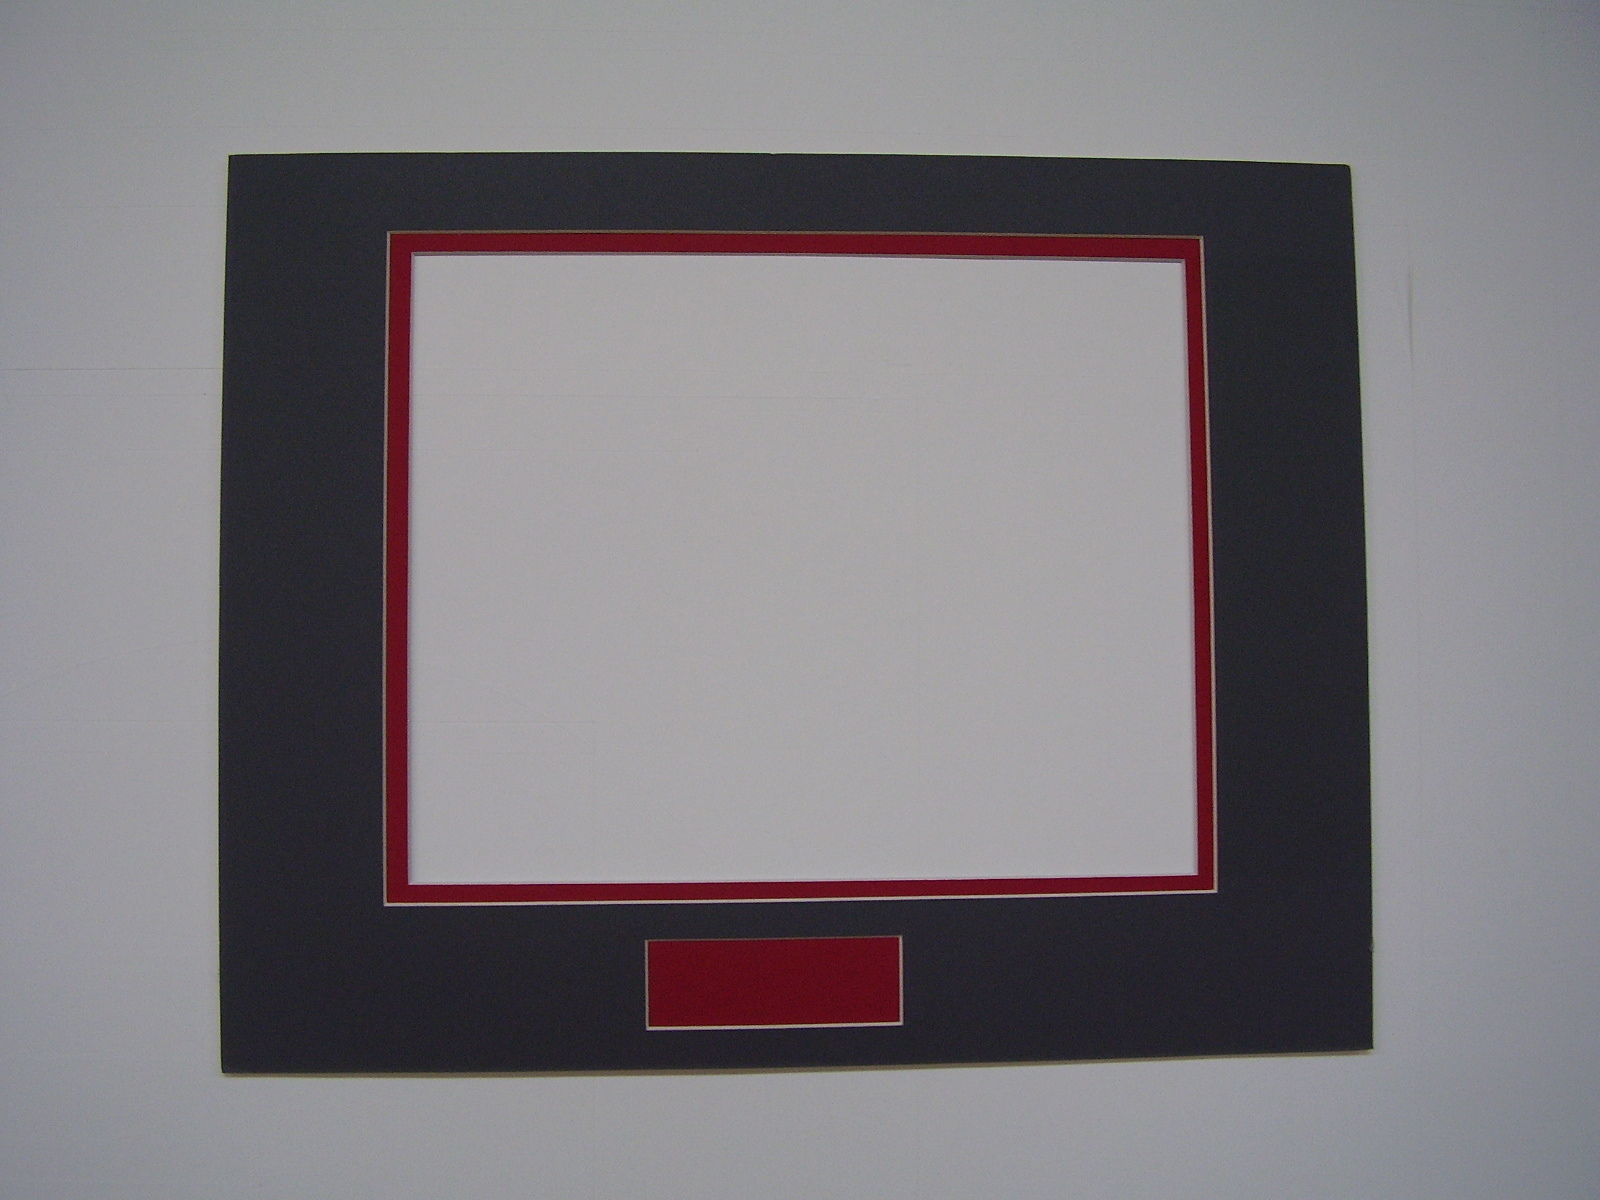 acrylic double sided frame 11x14